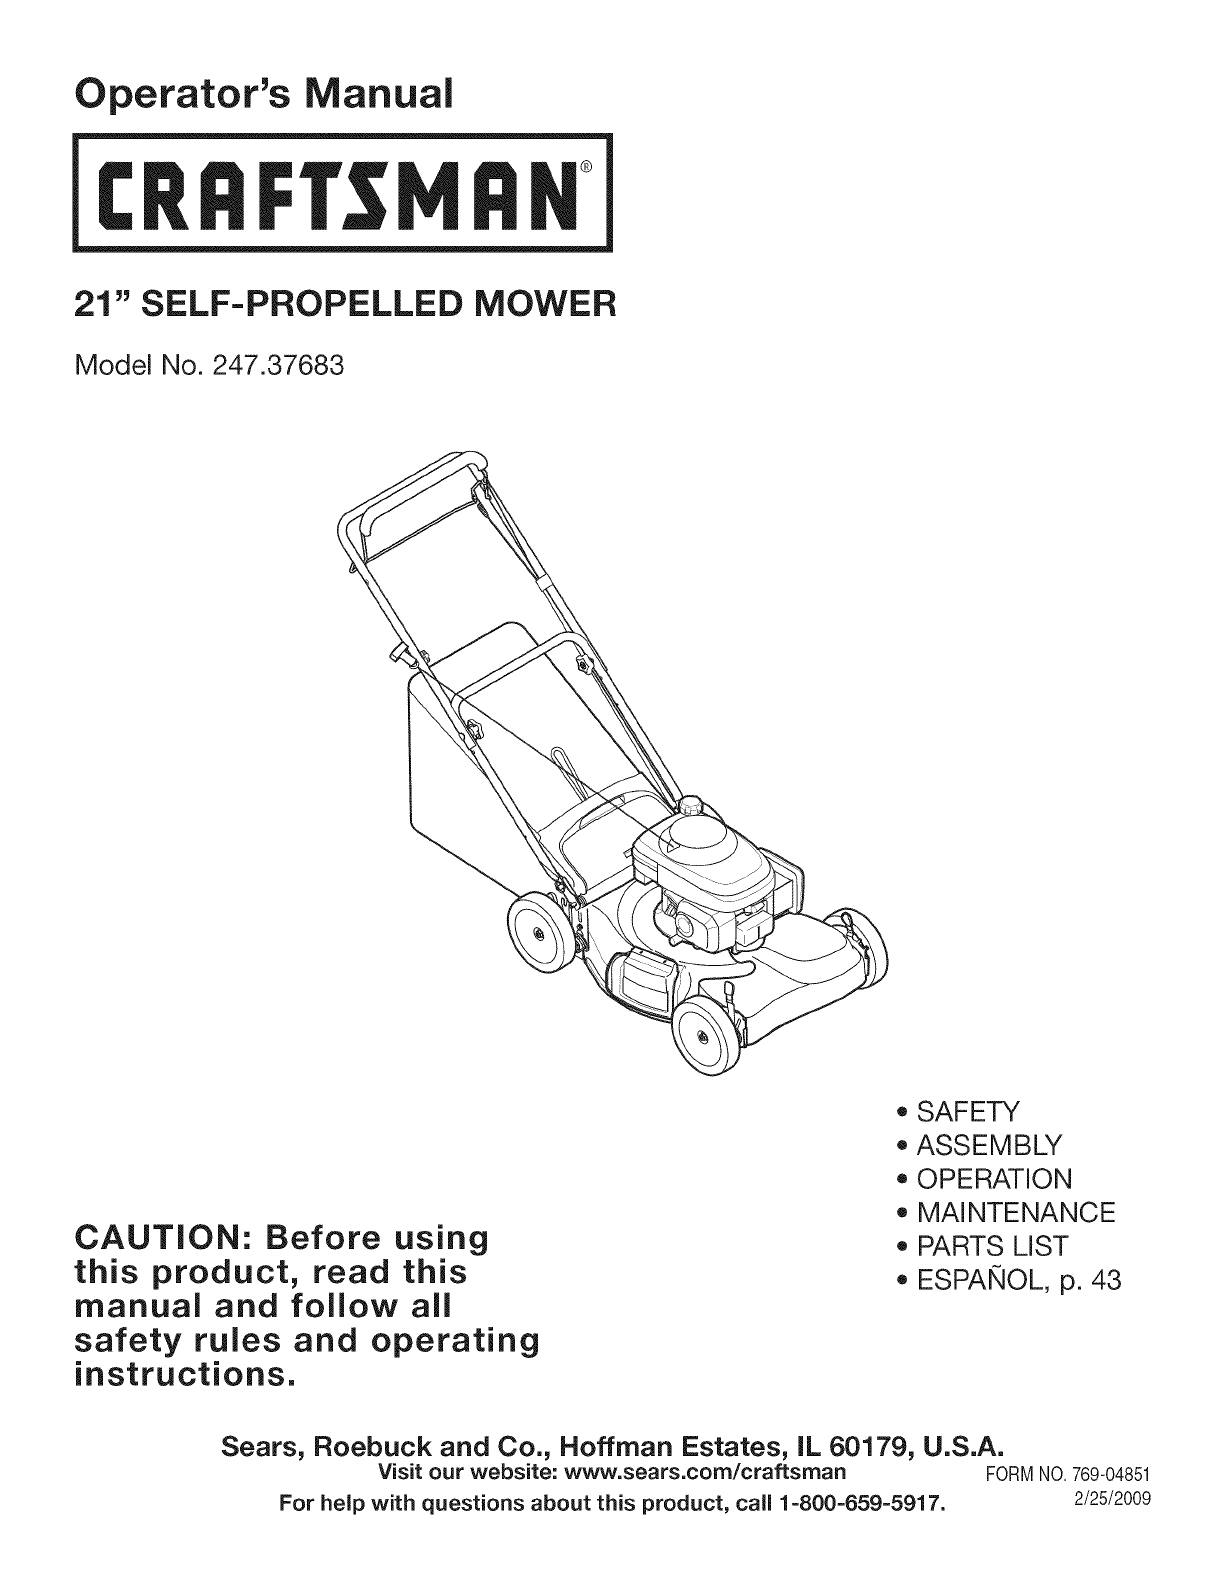 2007 craftsman dys 4500 manual